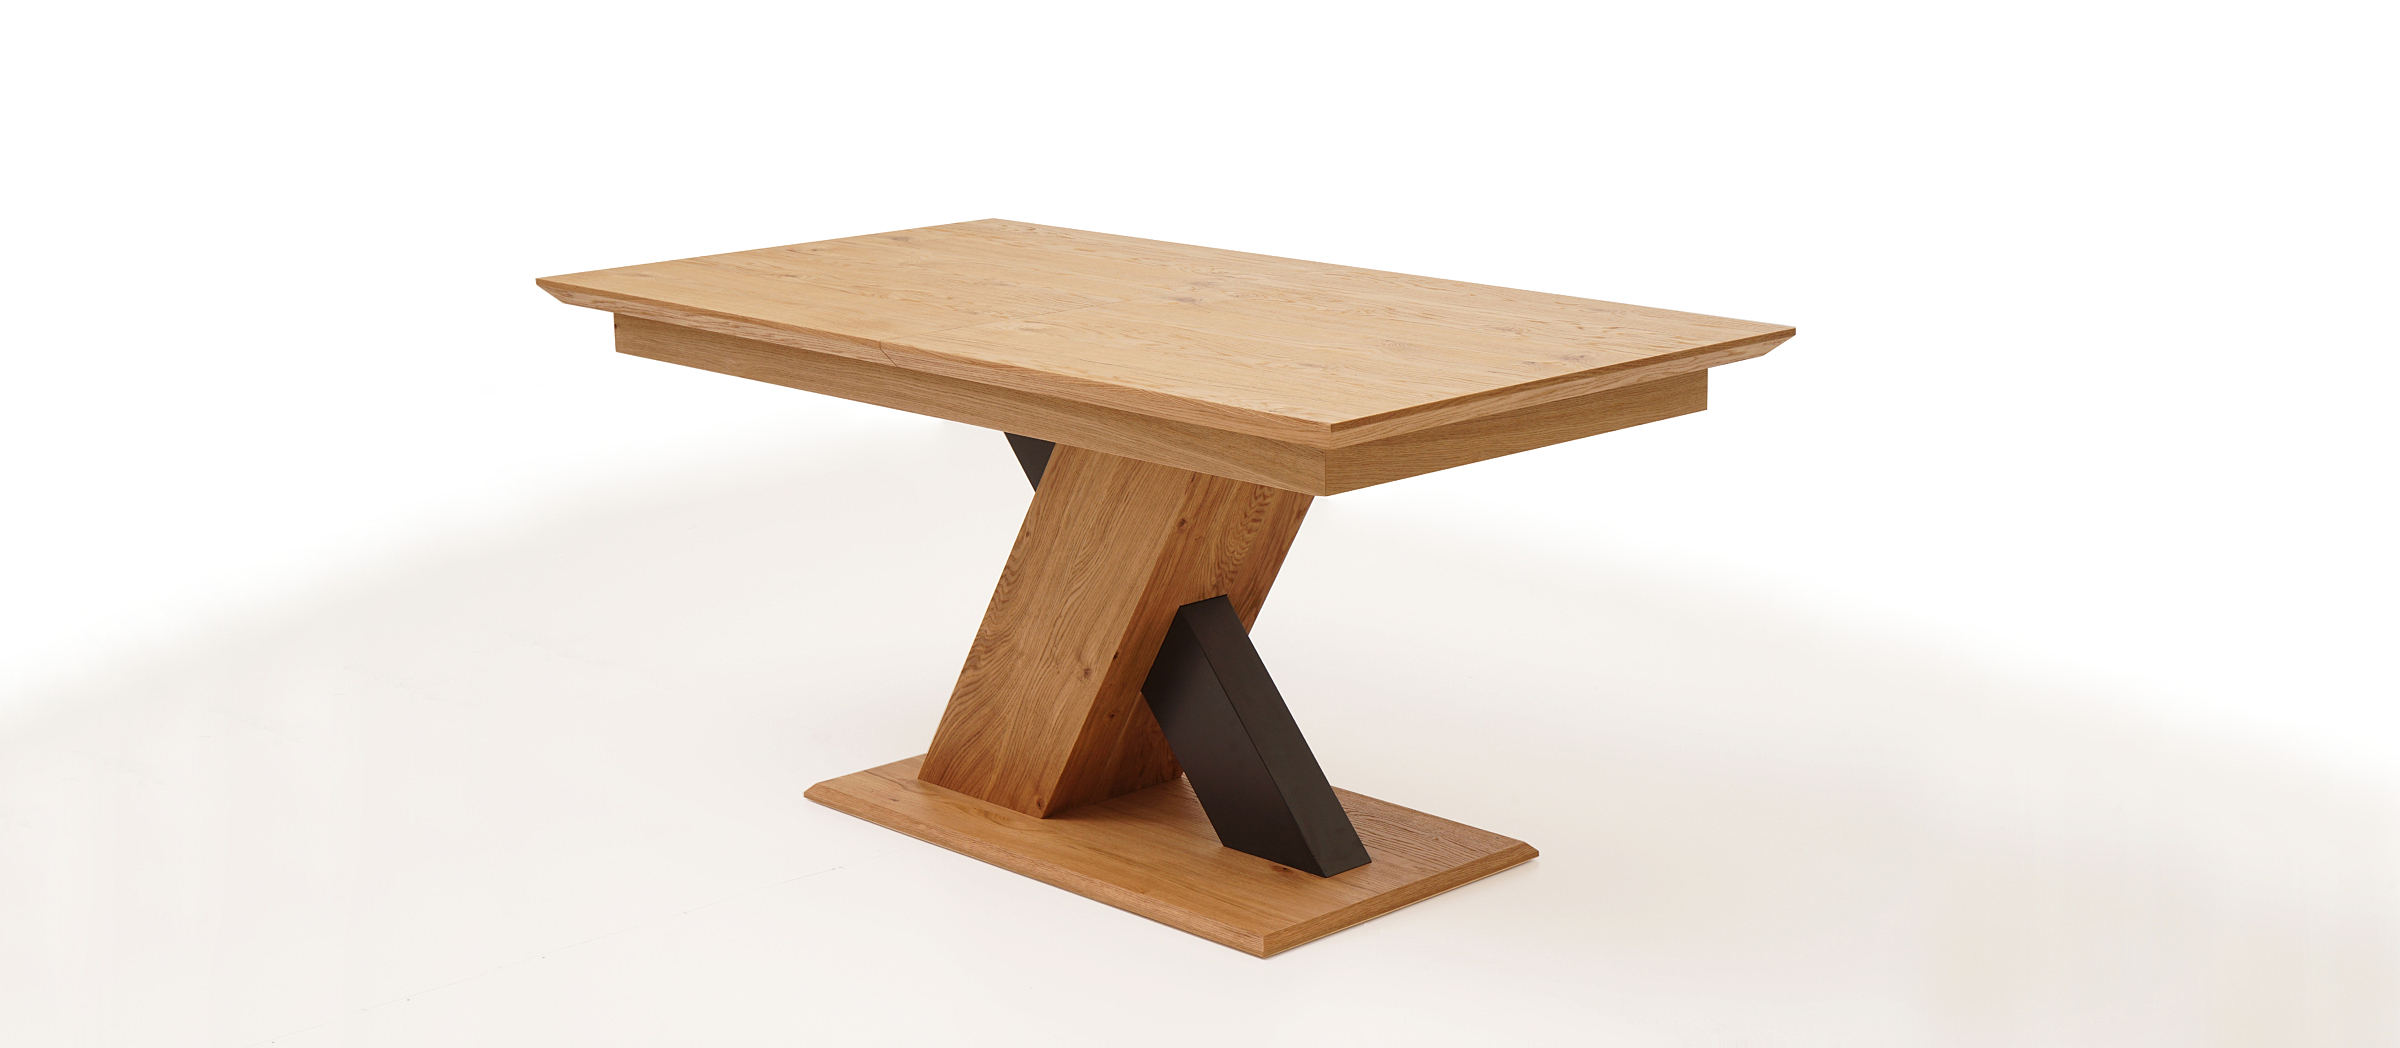 Sydney stół na jednej masywnej nodze drewnianej modern